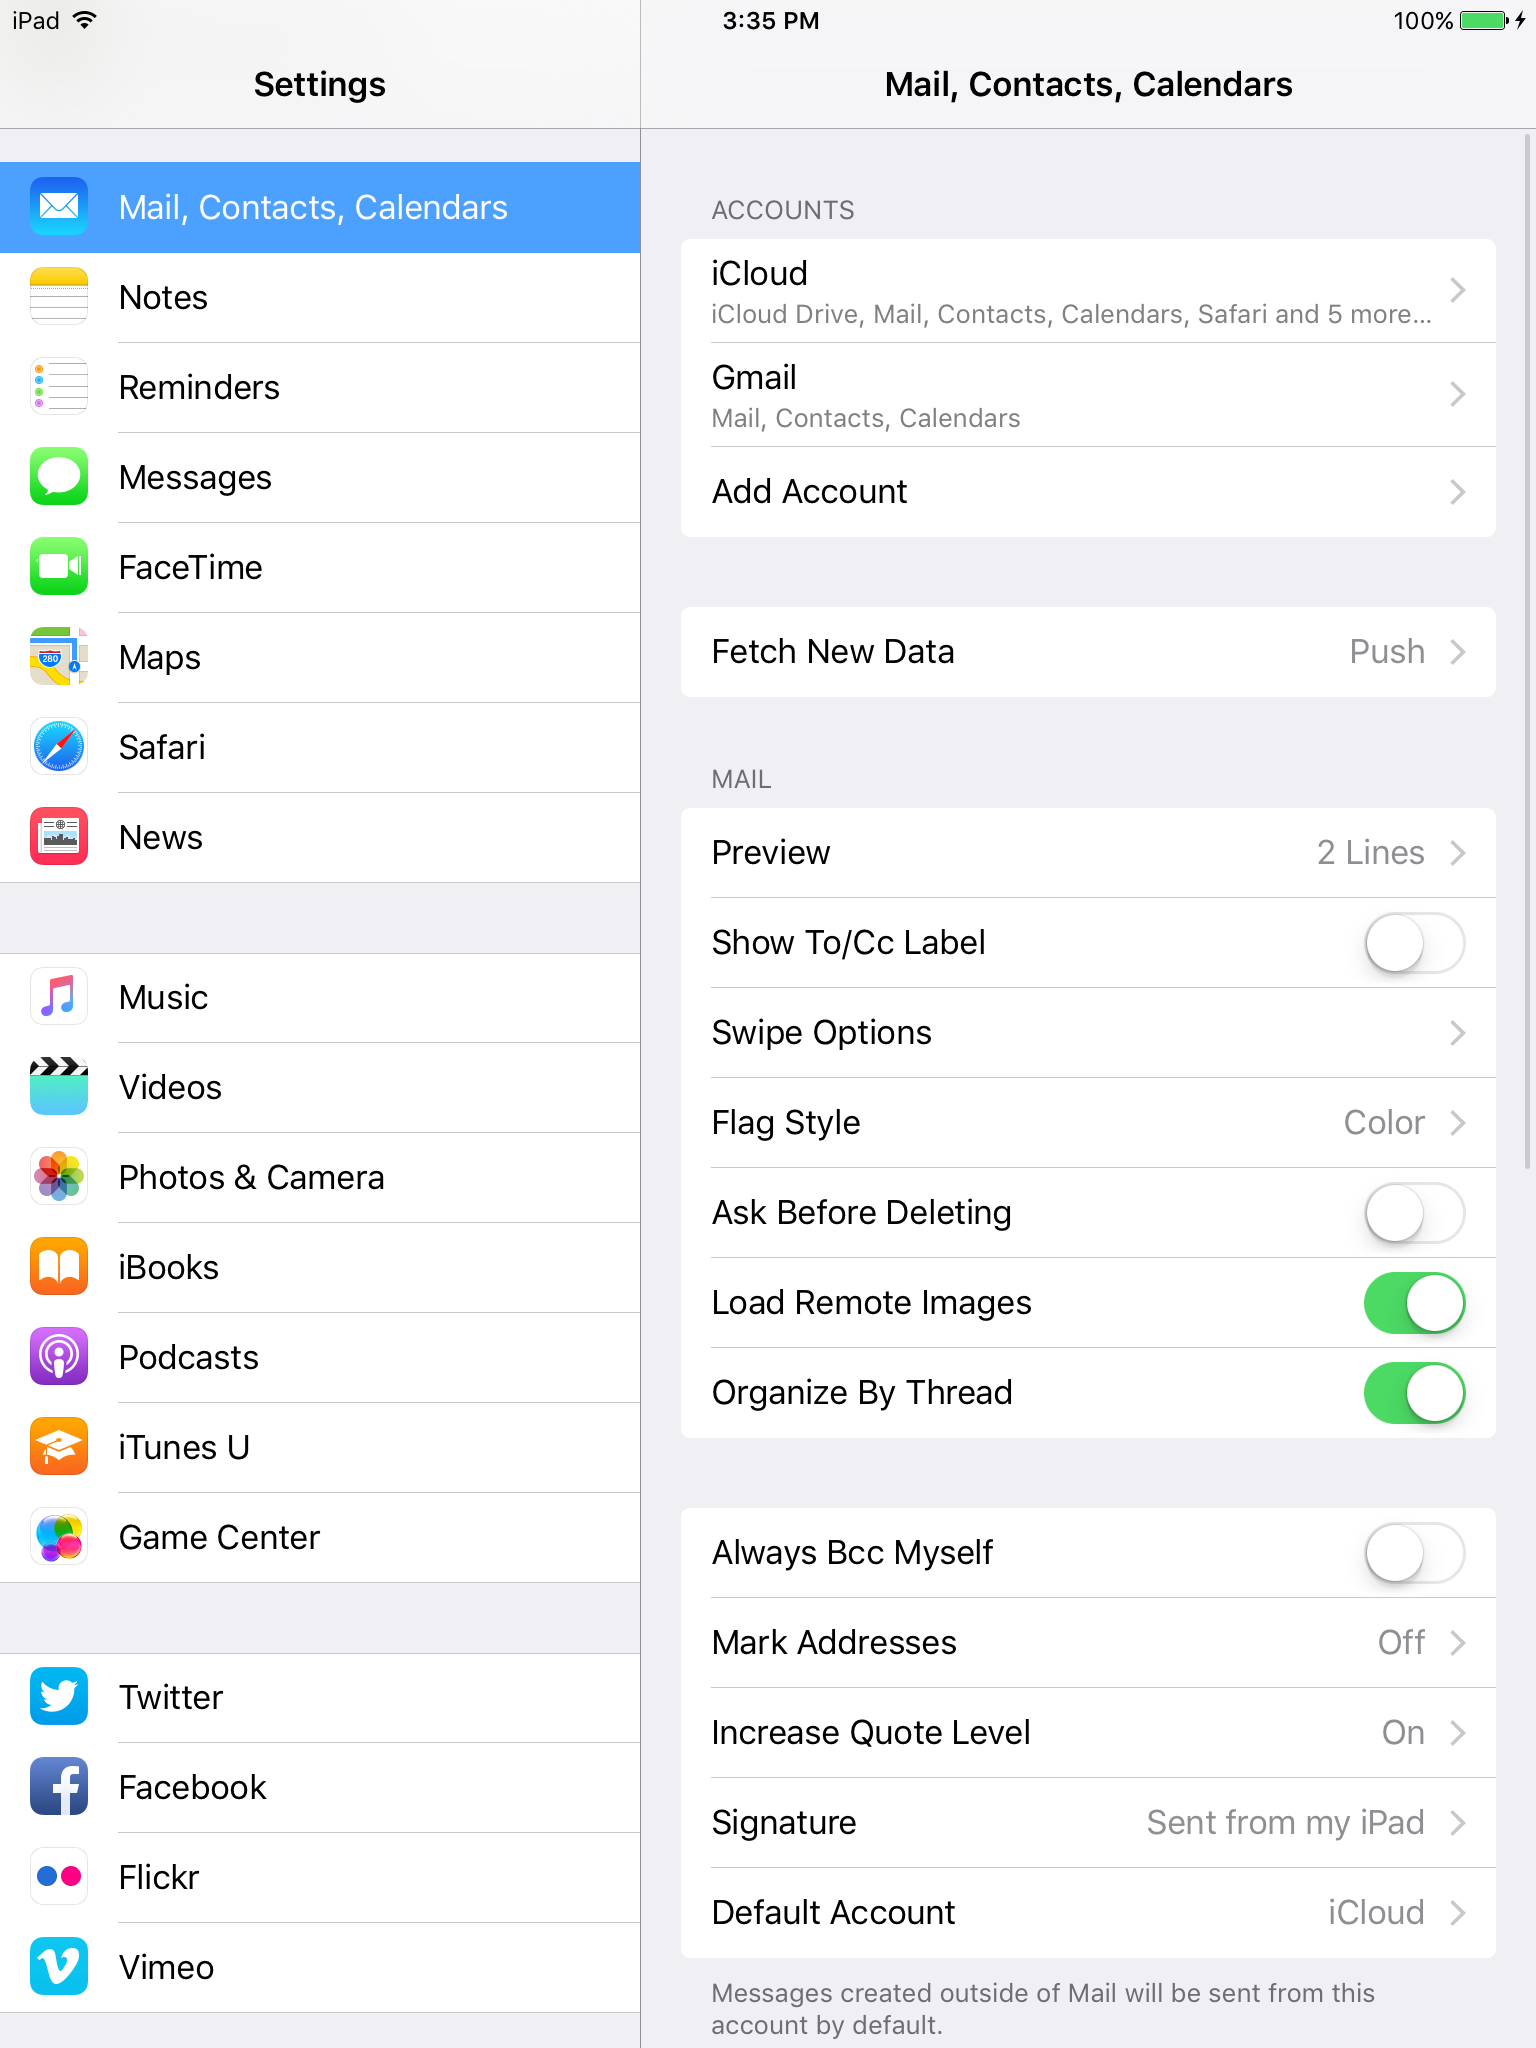 iOS Mail, Contacts, Calendars settings menu